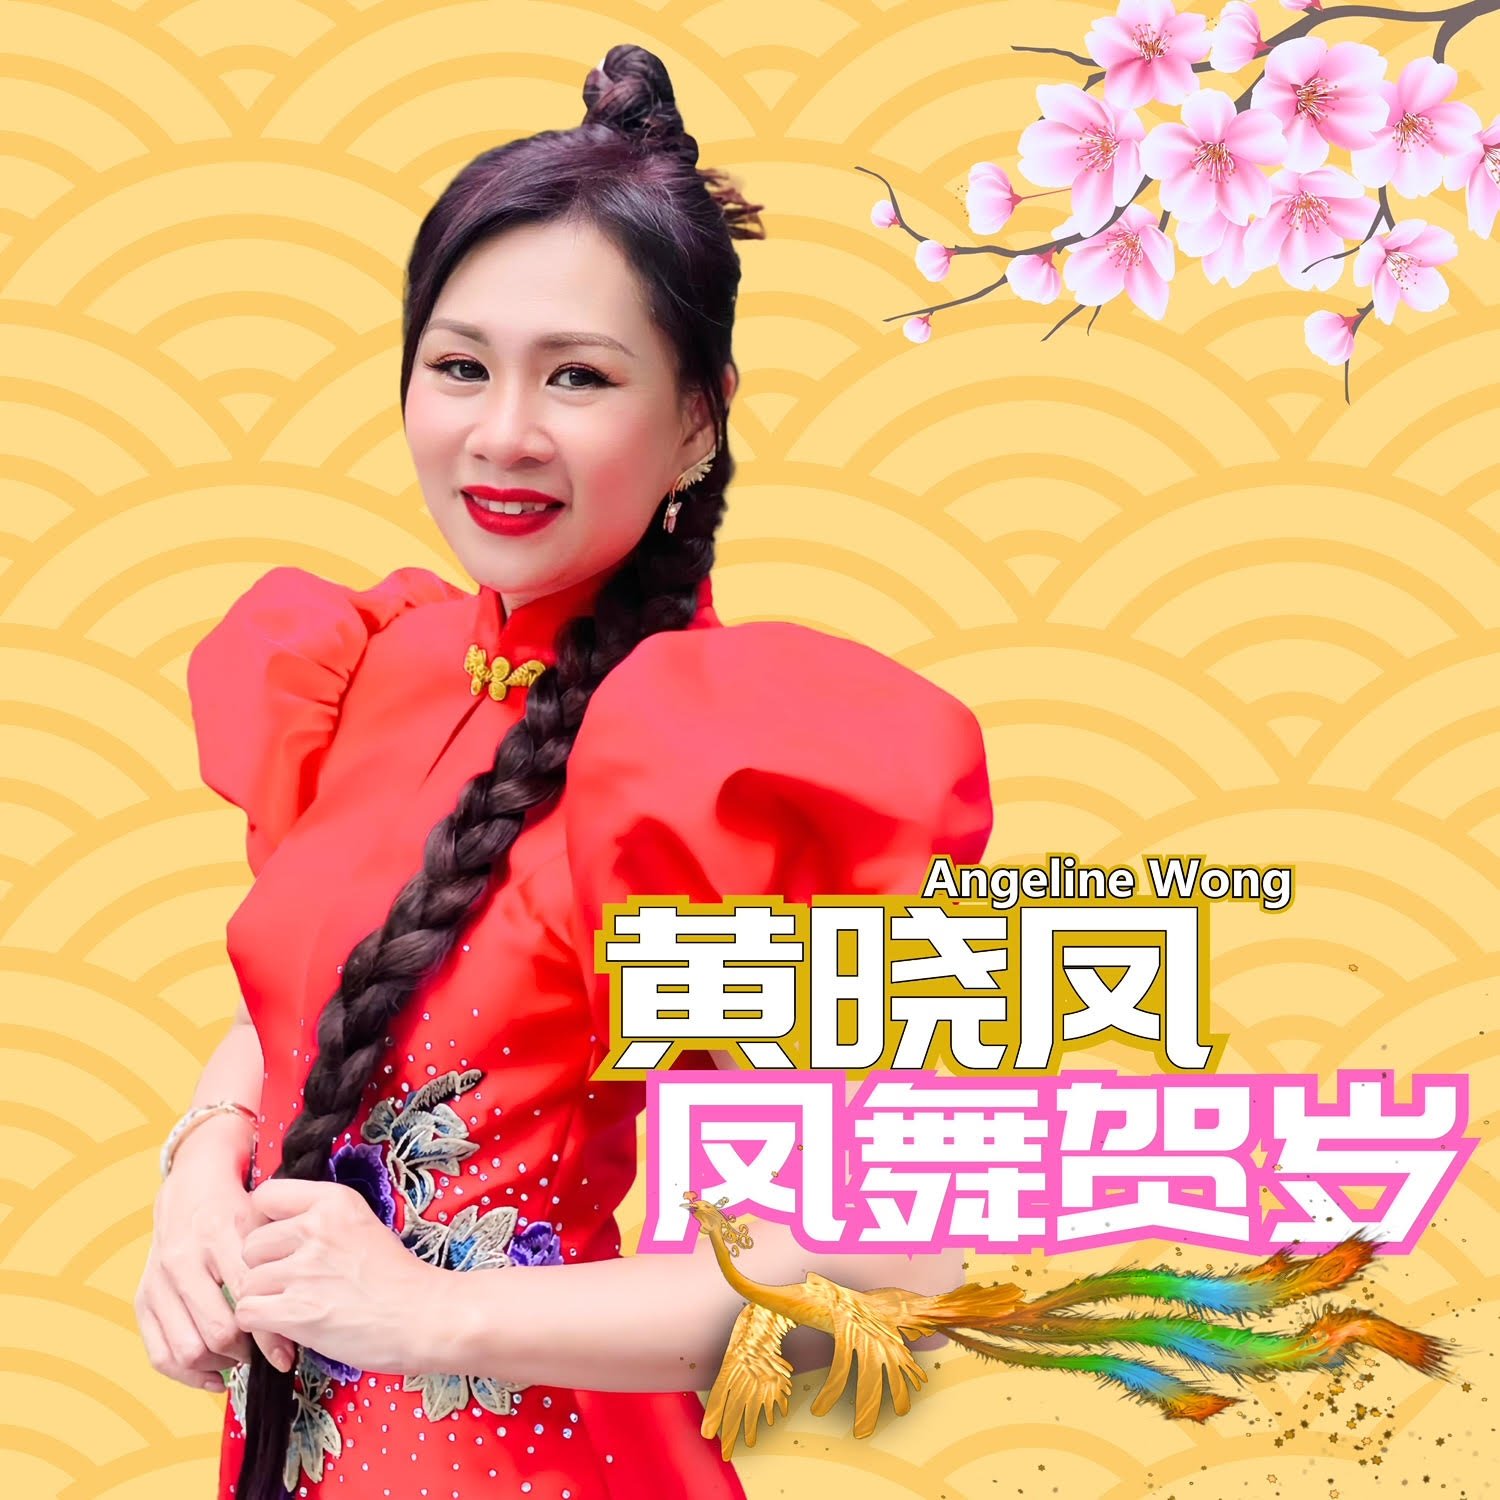 黄晓凤的《凤舞贺岁》在数码平台上架。